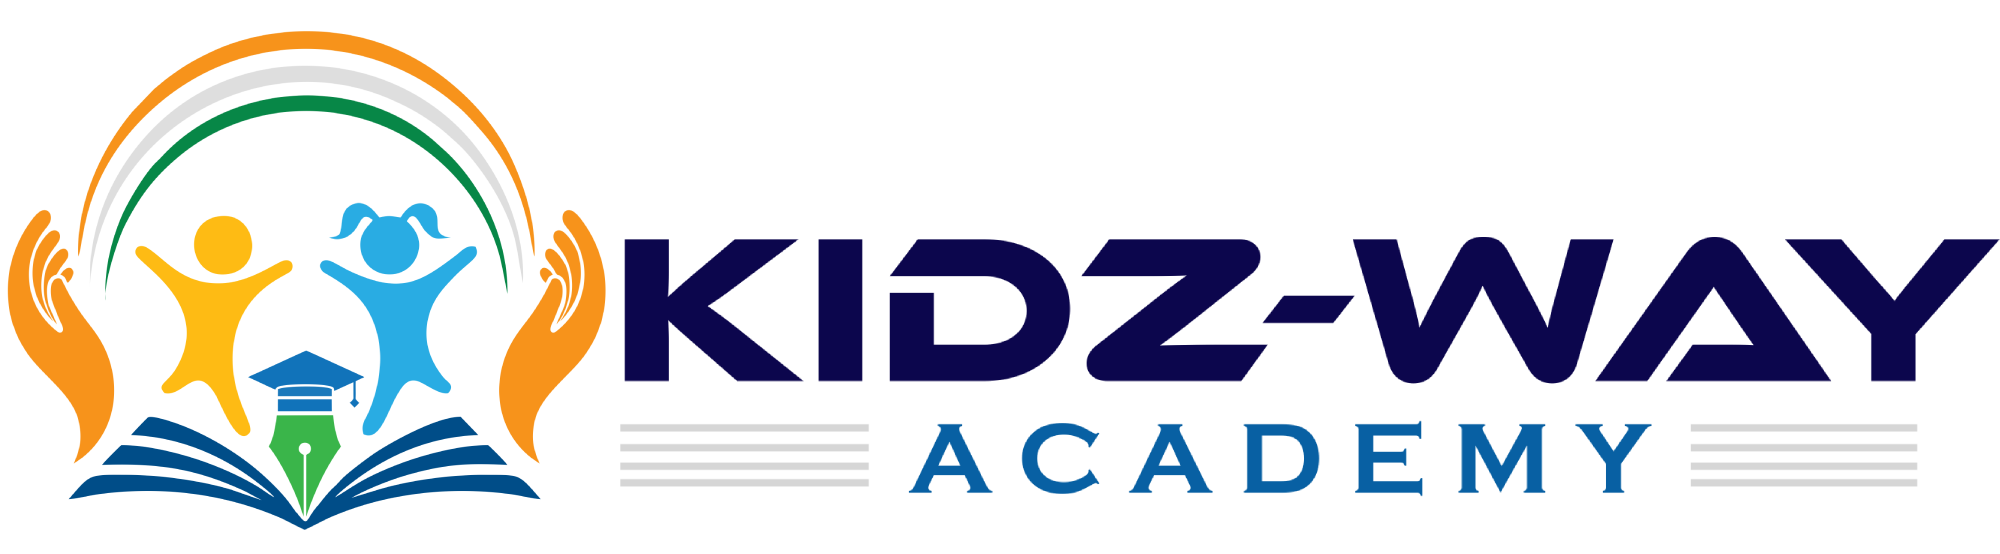 Kidz-Way Academy Logo